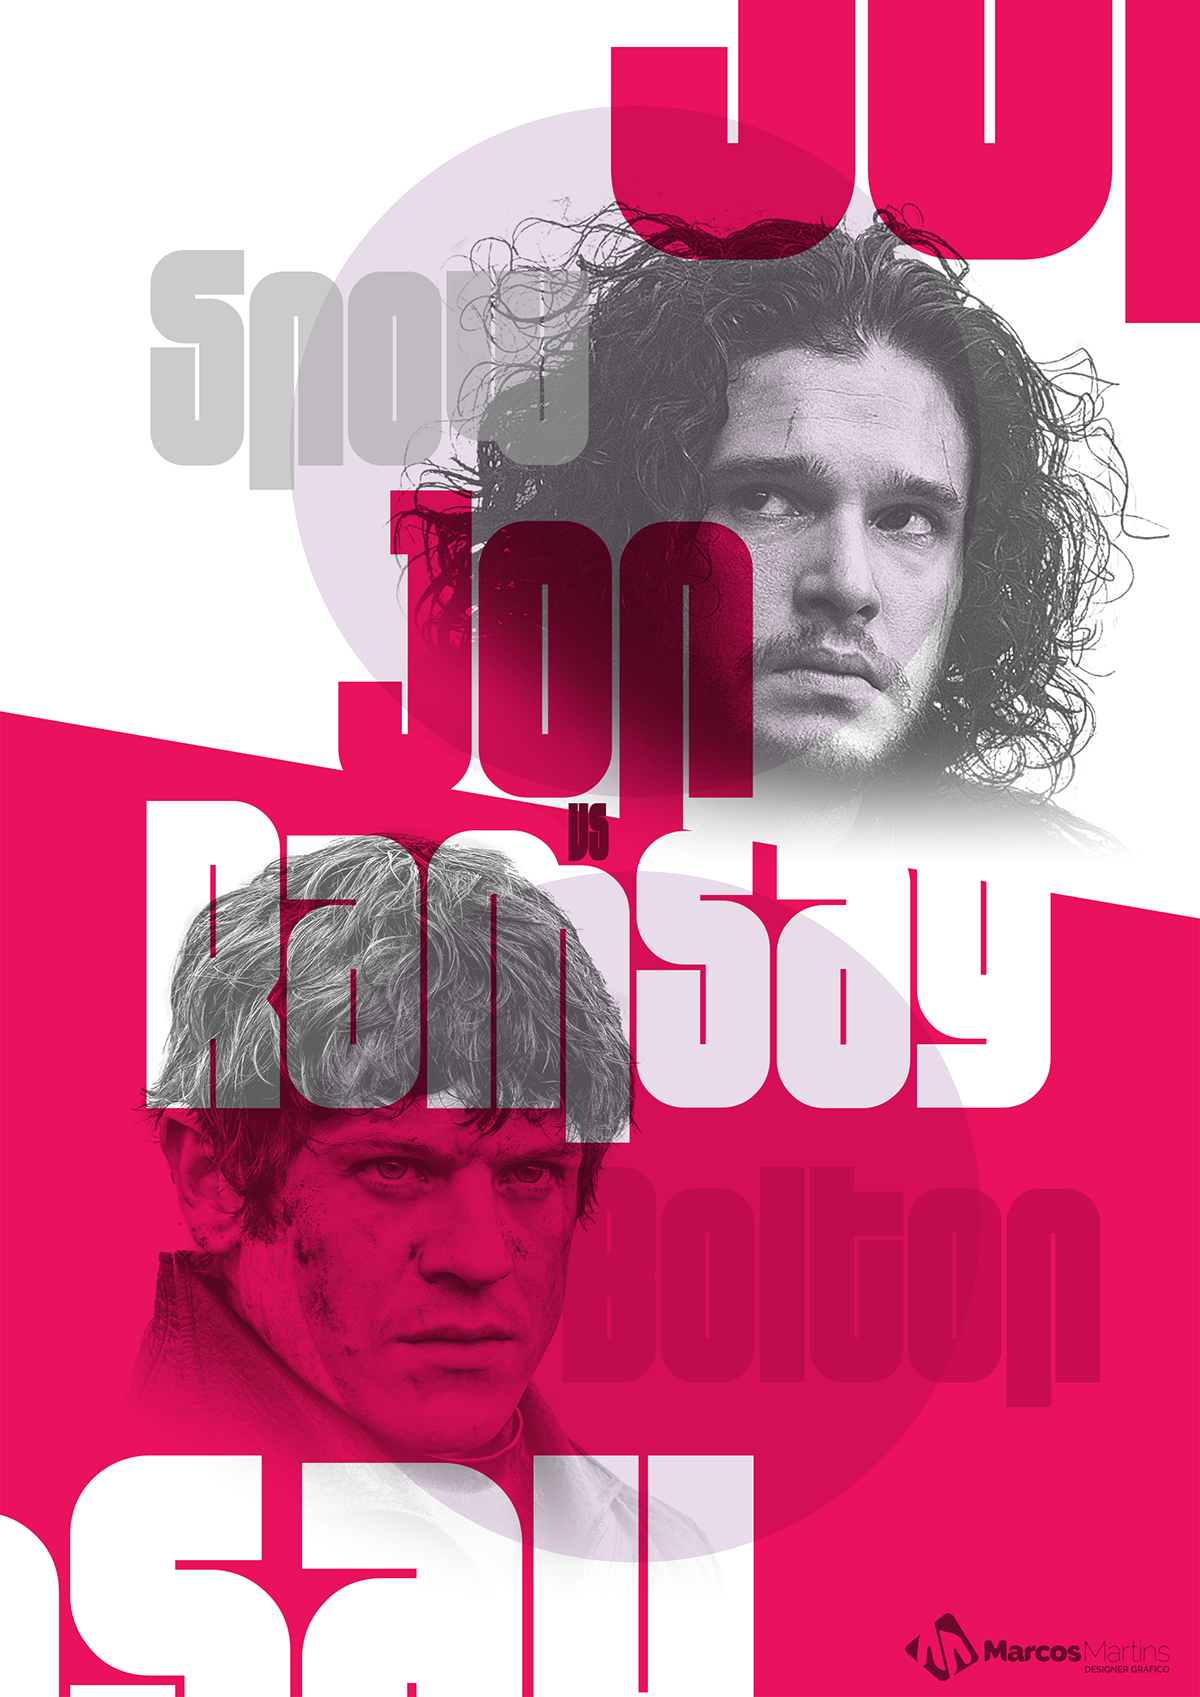 Jon Snow Ramsay Bolton  got Game Of  Throne cartaz manipulação Fotografia Phootoshop montagem